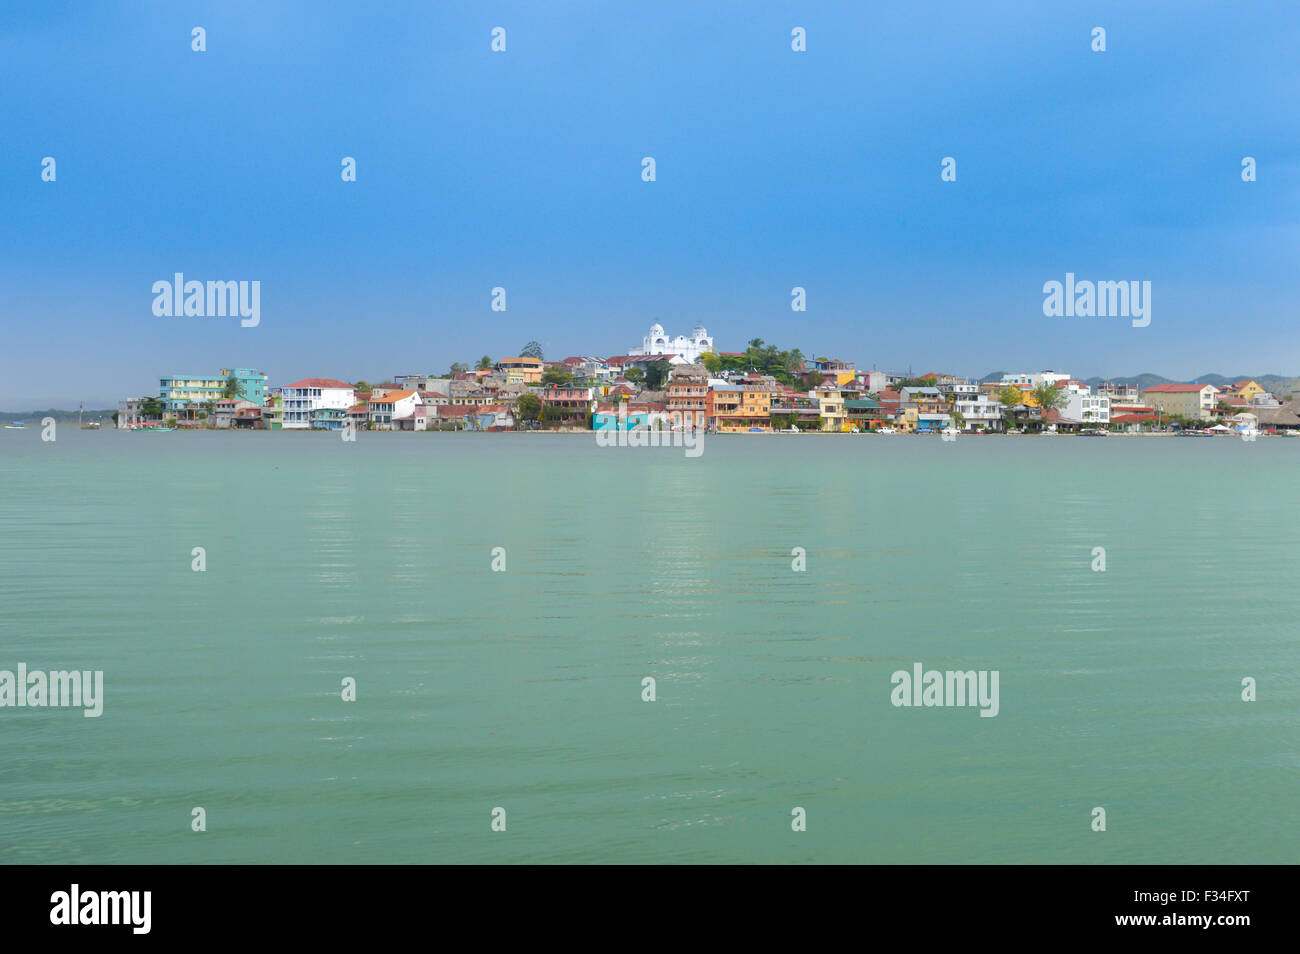 Die Aussicht auf die Stadt Flores, gesehen vom Boot auf dem See Petén Itzá, Guatemala Stockfoto